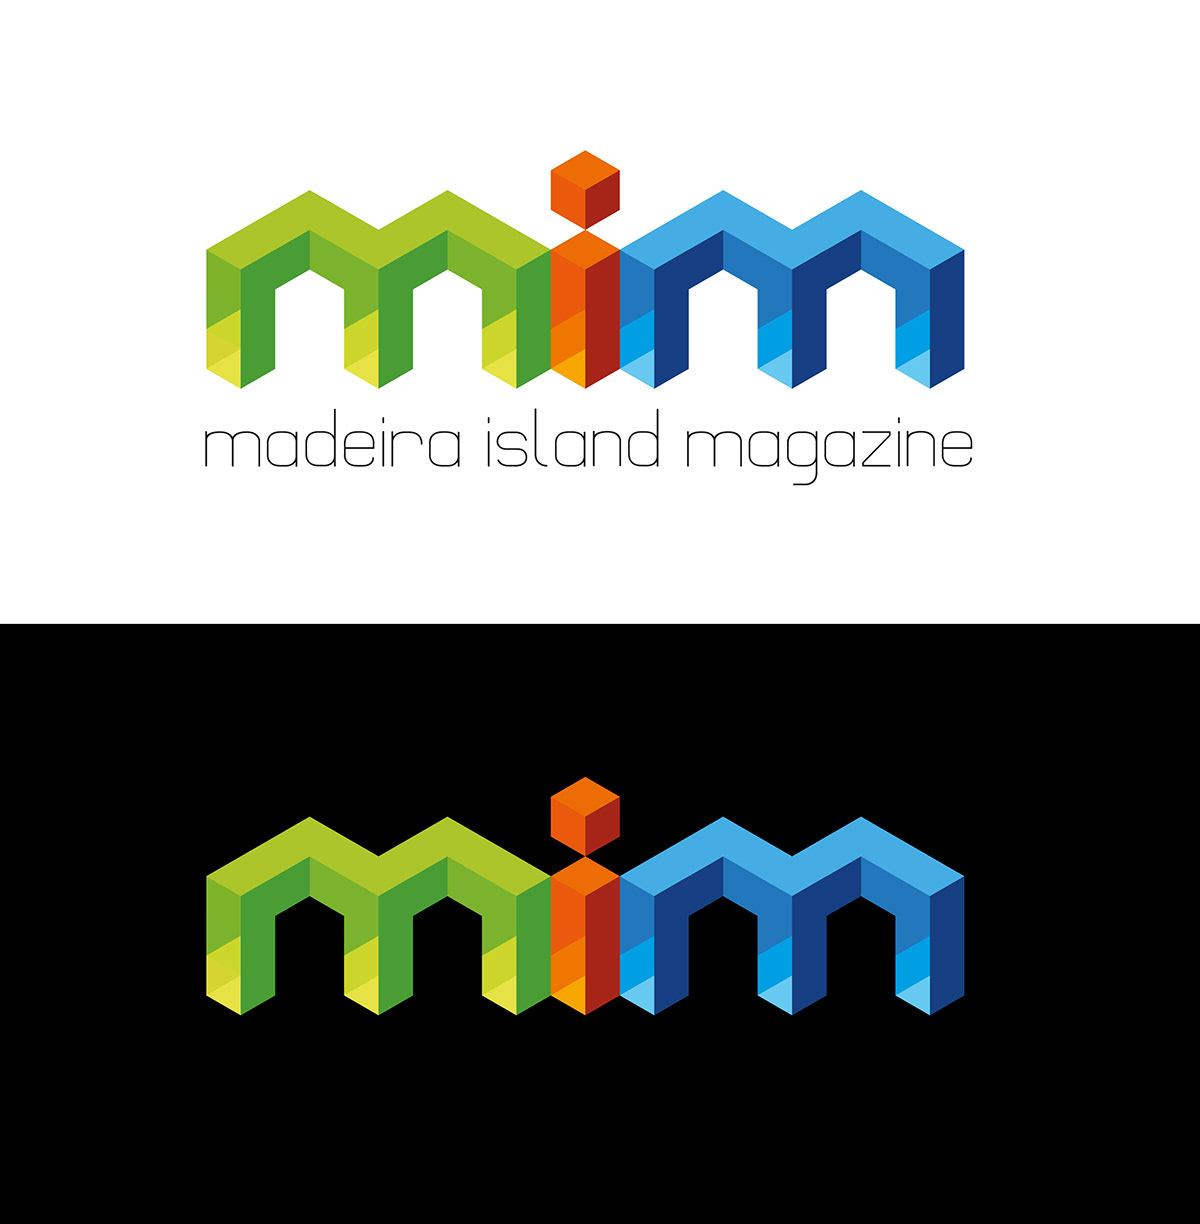 logo brand mark company service